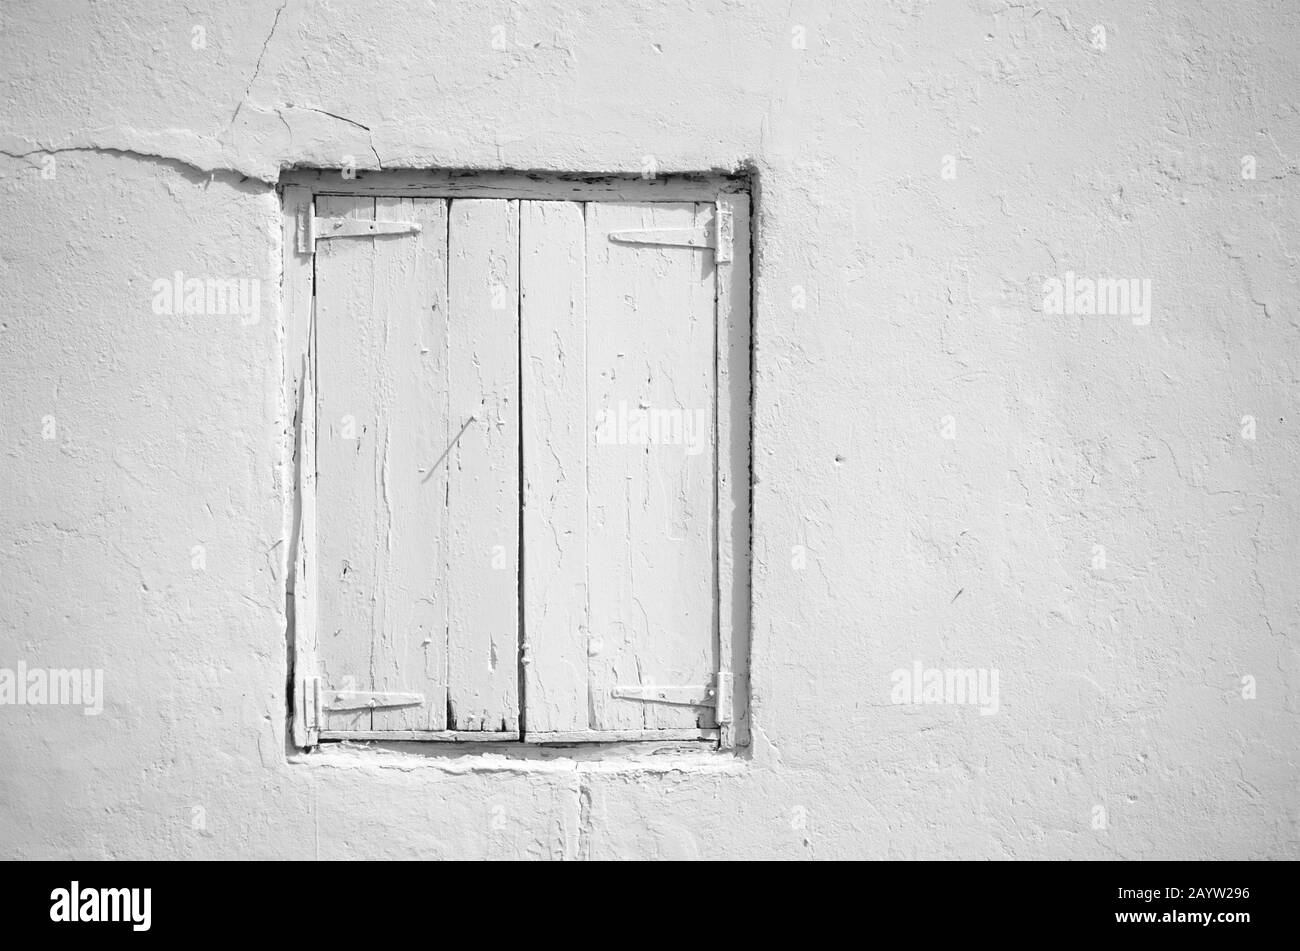 Vista dal taglio corto di un edificio in cemento dipinto di bianco con persiane di legno chiuse di bianco. Fotografia in bianco e nero. Foto Stock